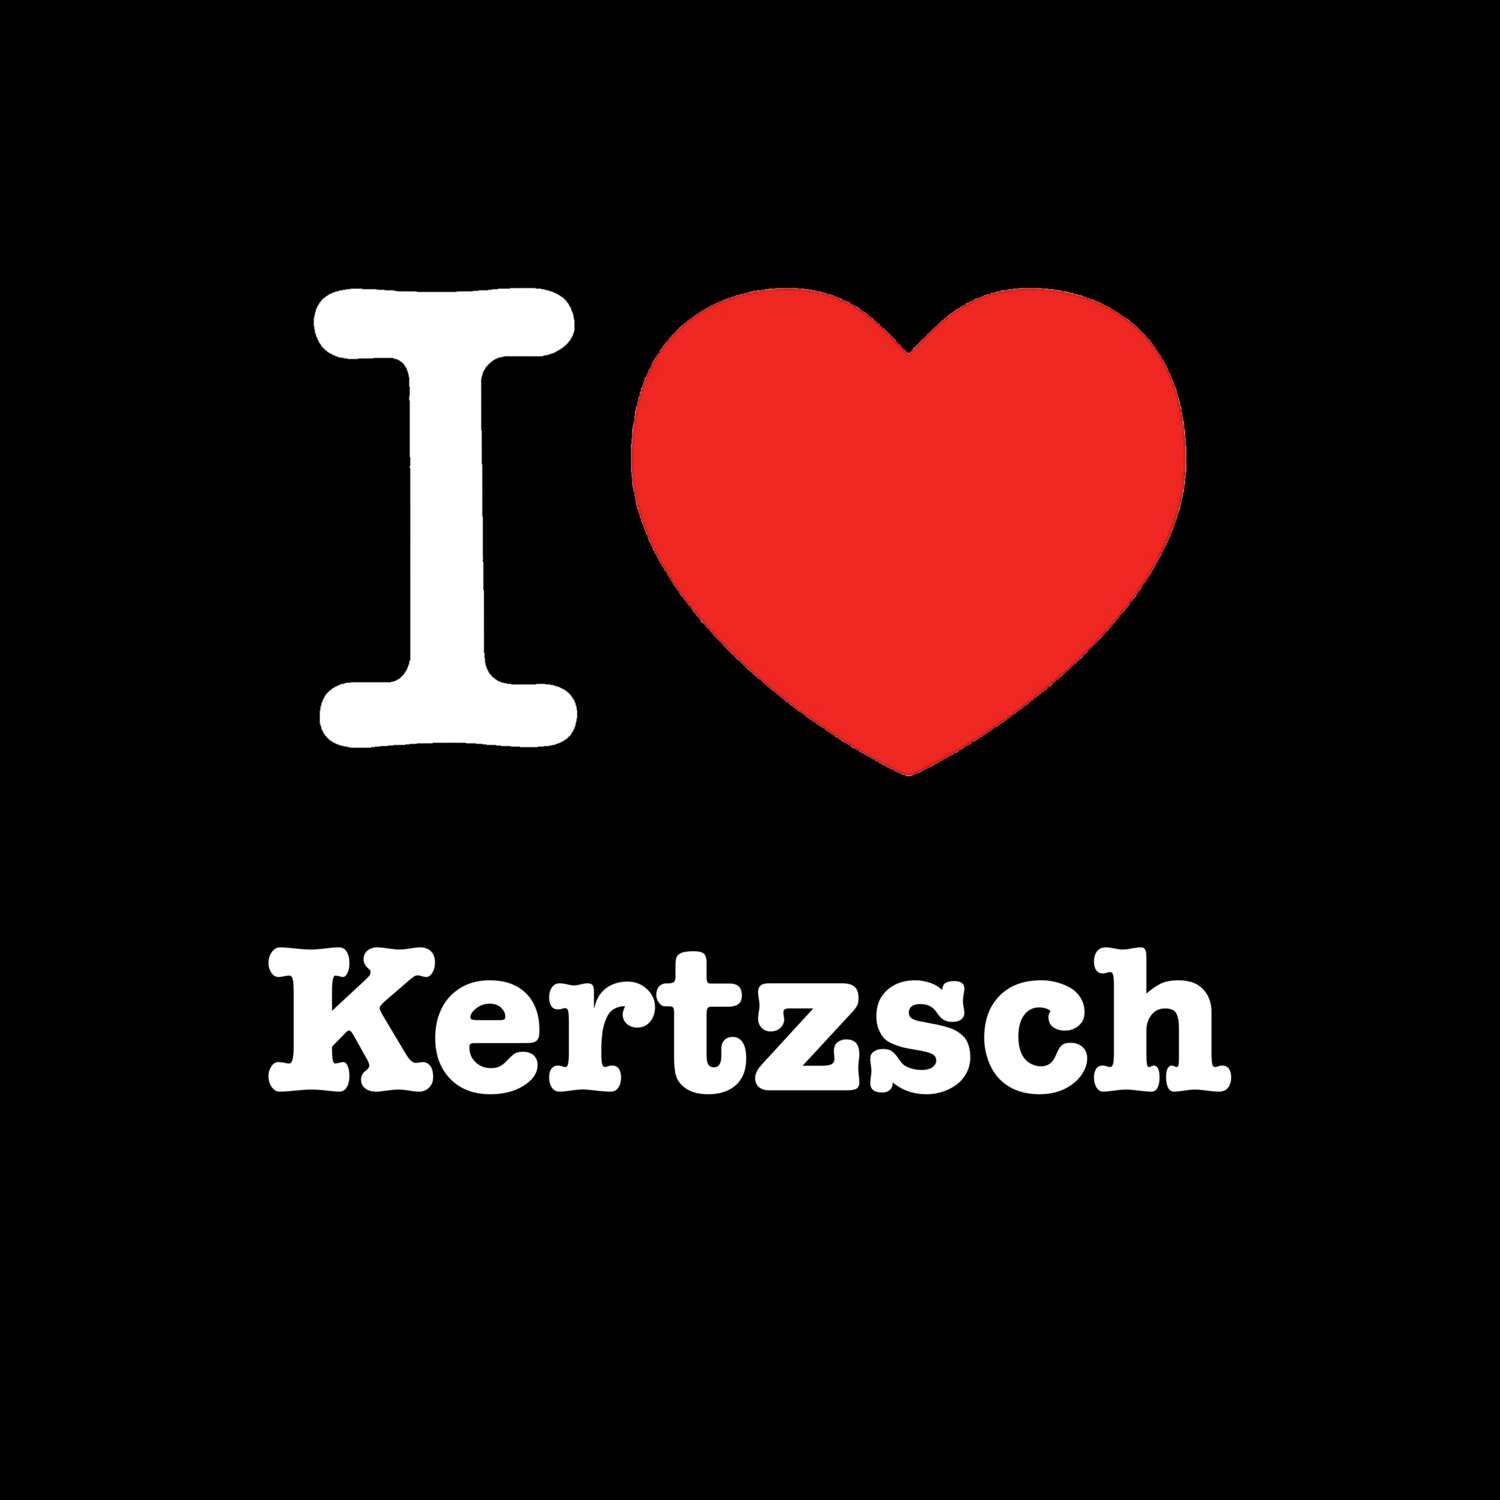 Kertzsch T-Shirt »I love«